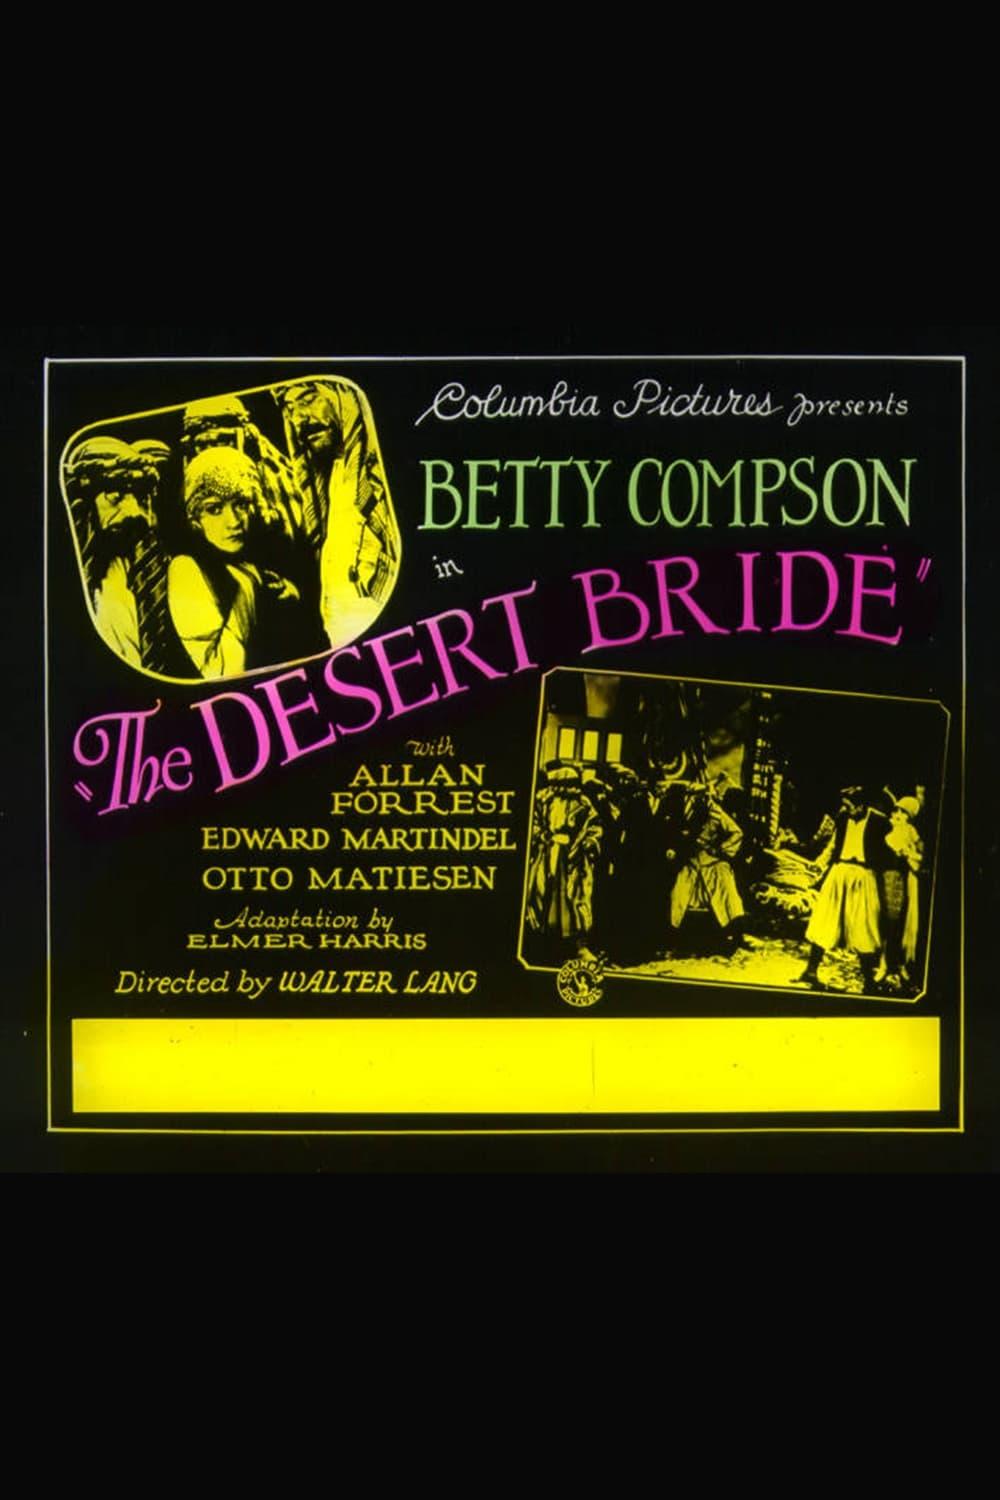 The Desert Bride poster